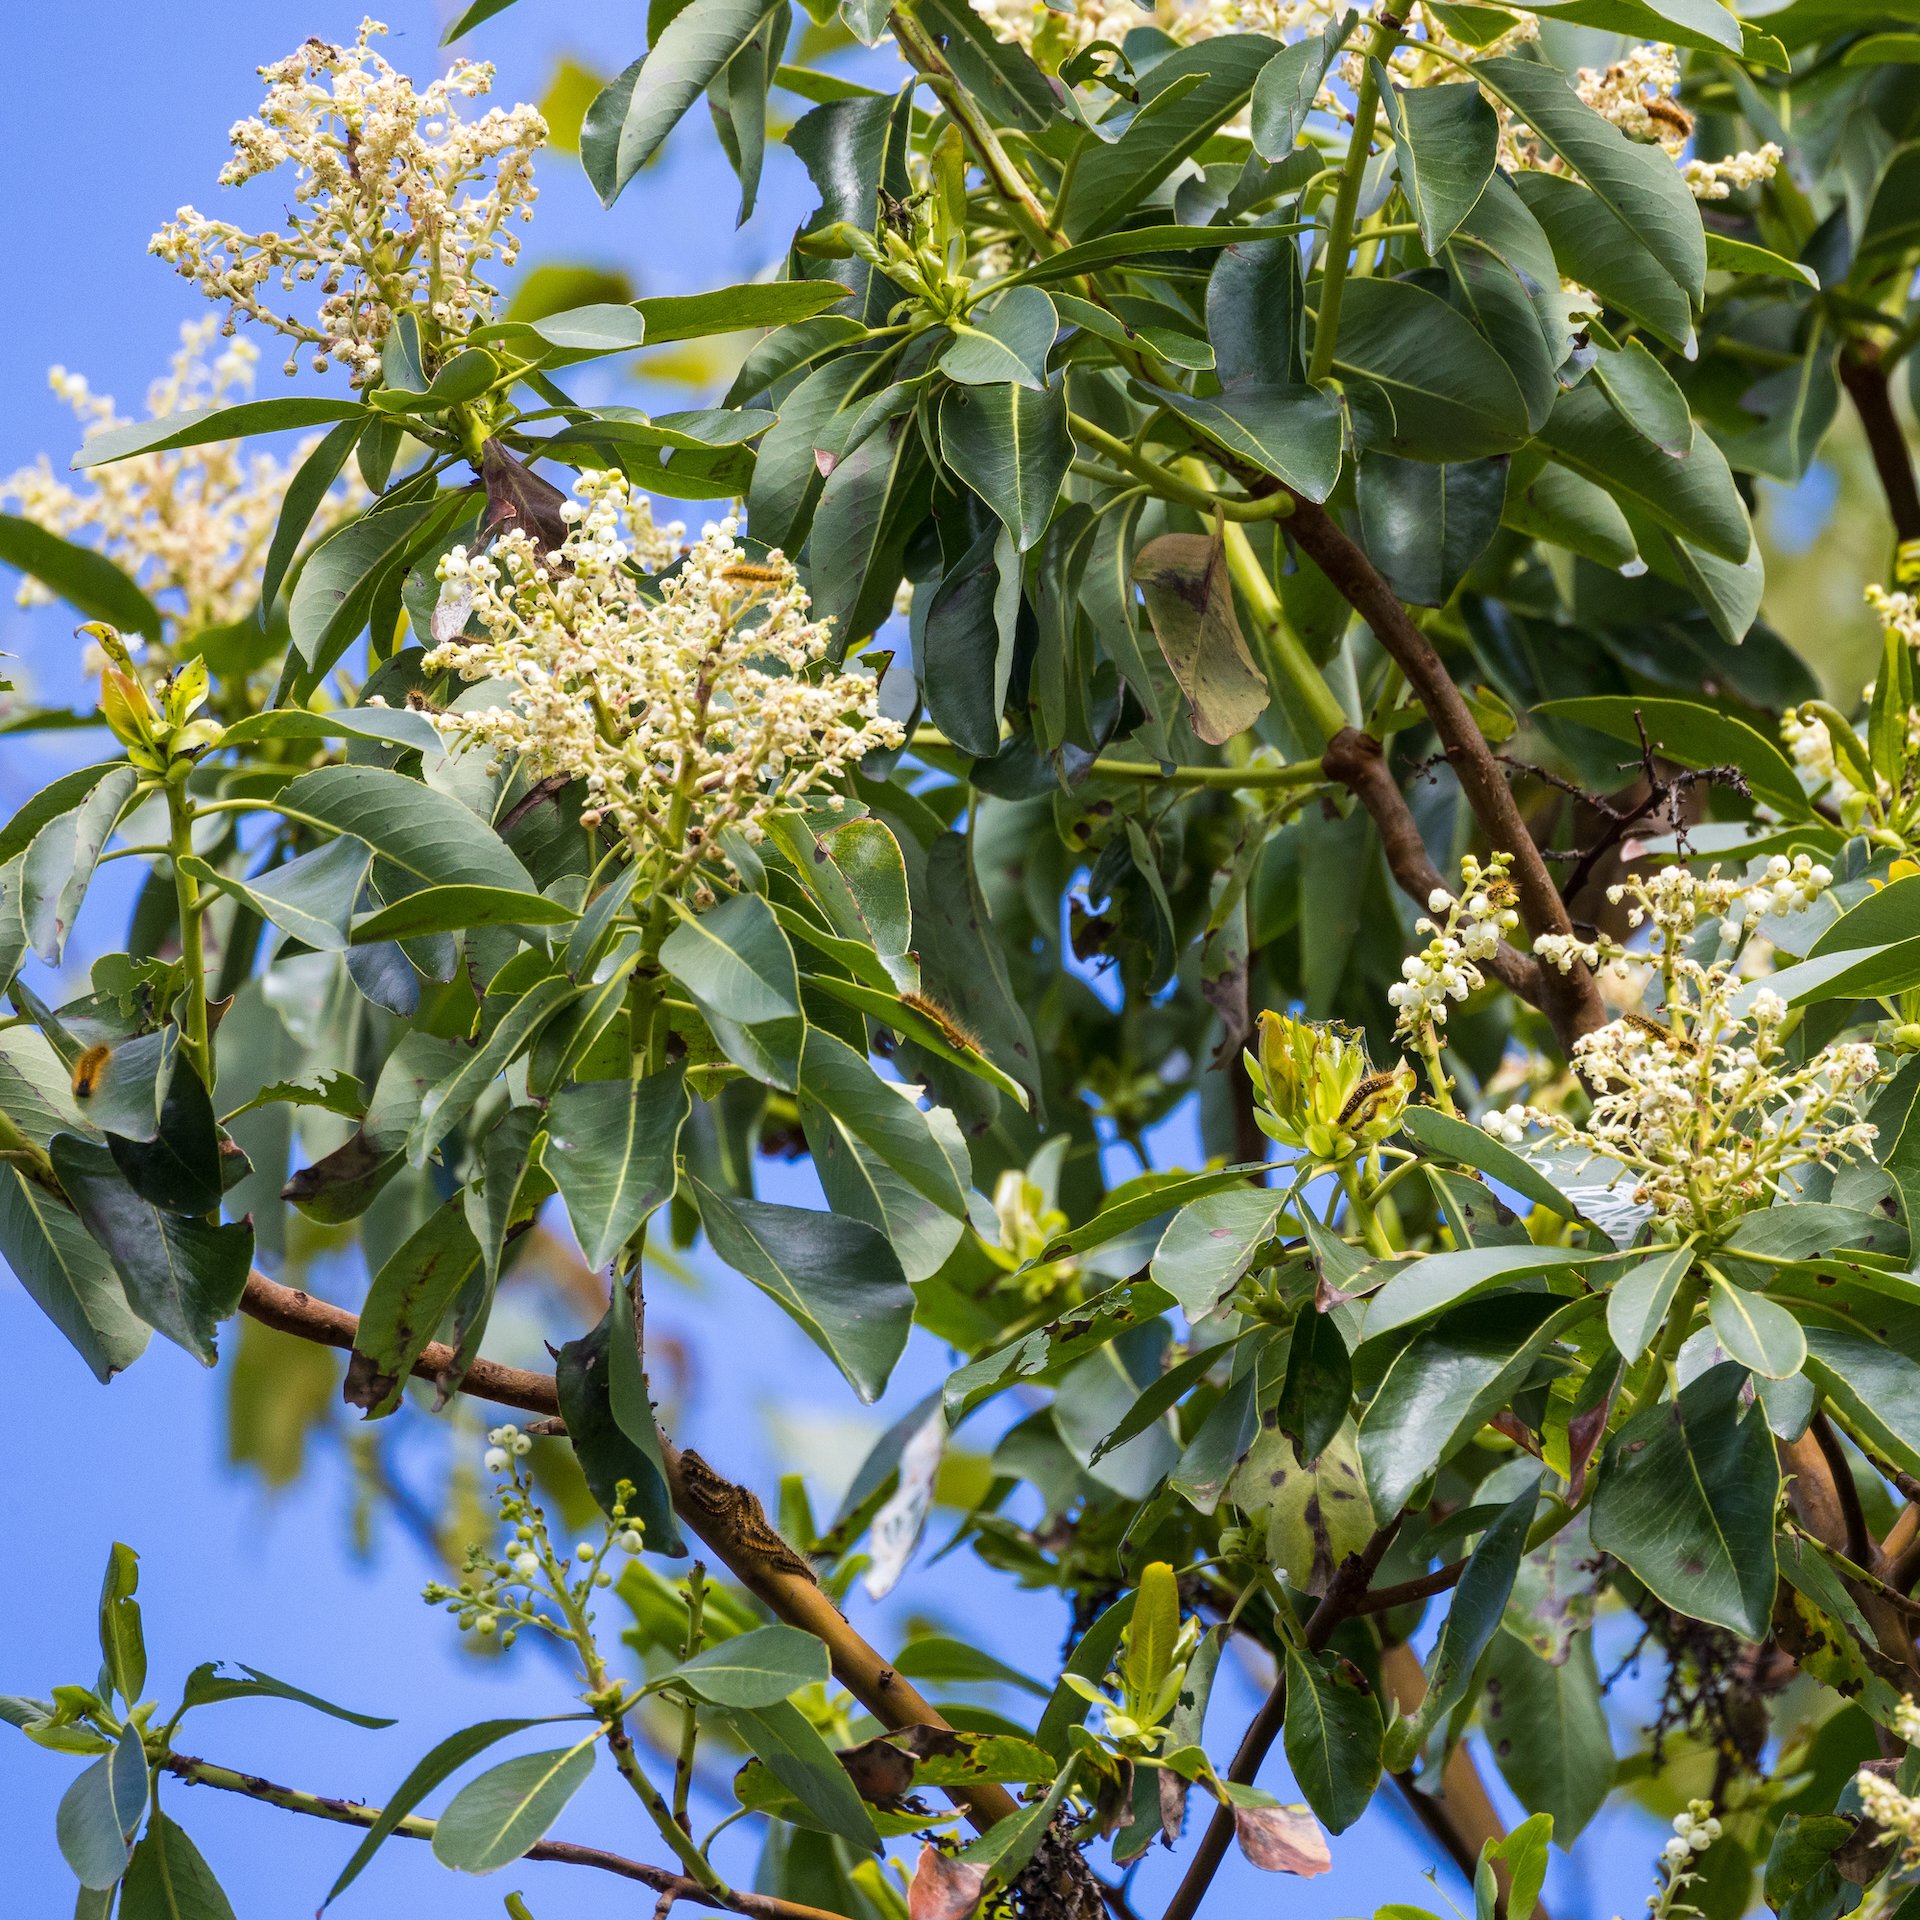  Arbutus tree flowers 